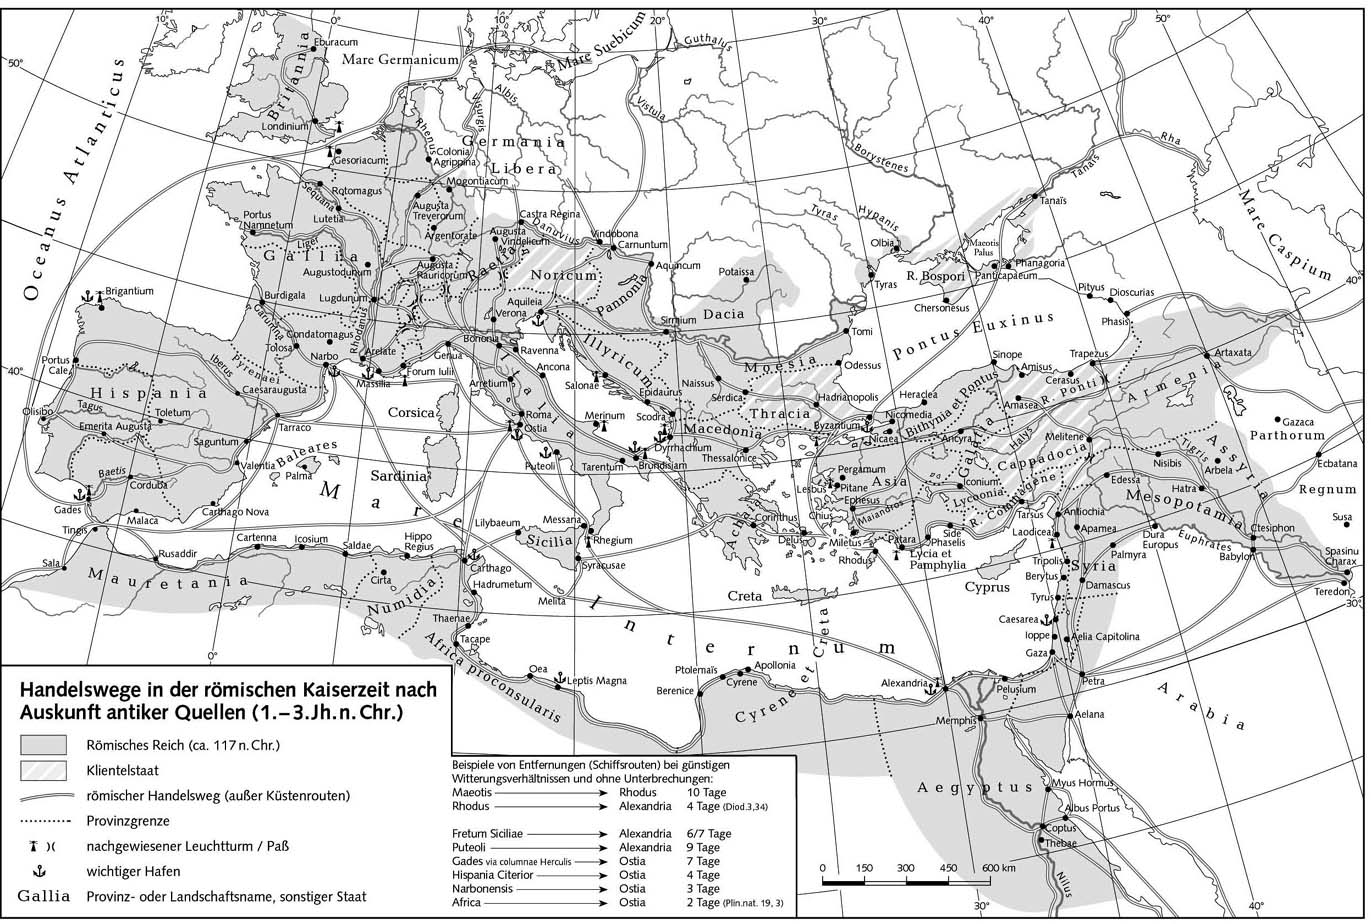 Торговые пути во времена римской империи по сведениям античных источников